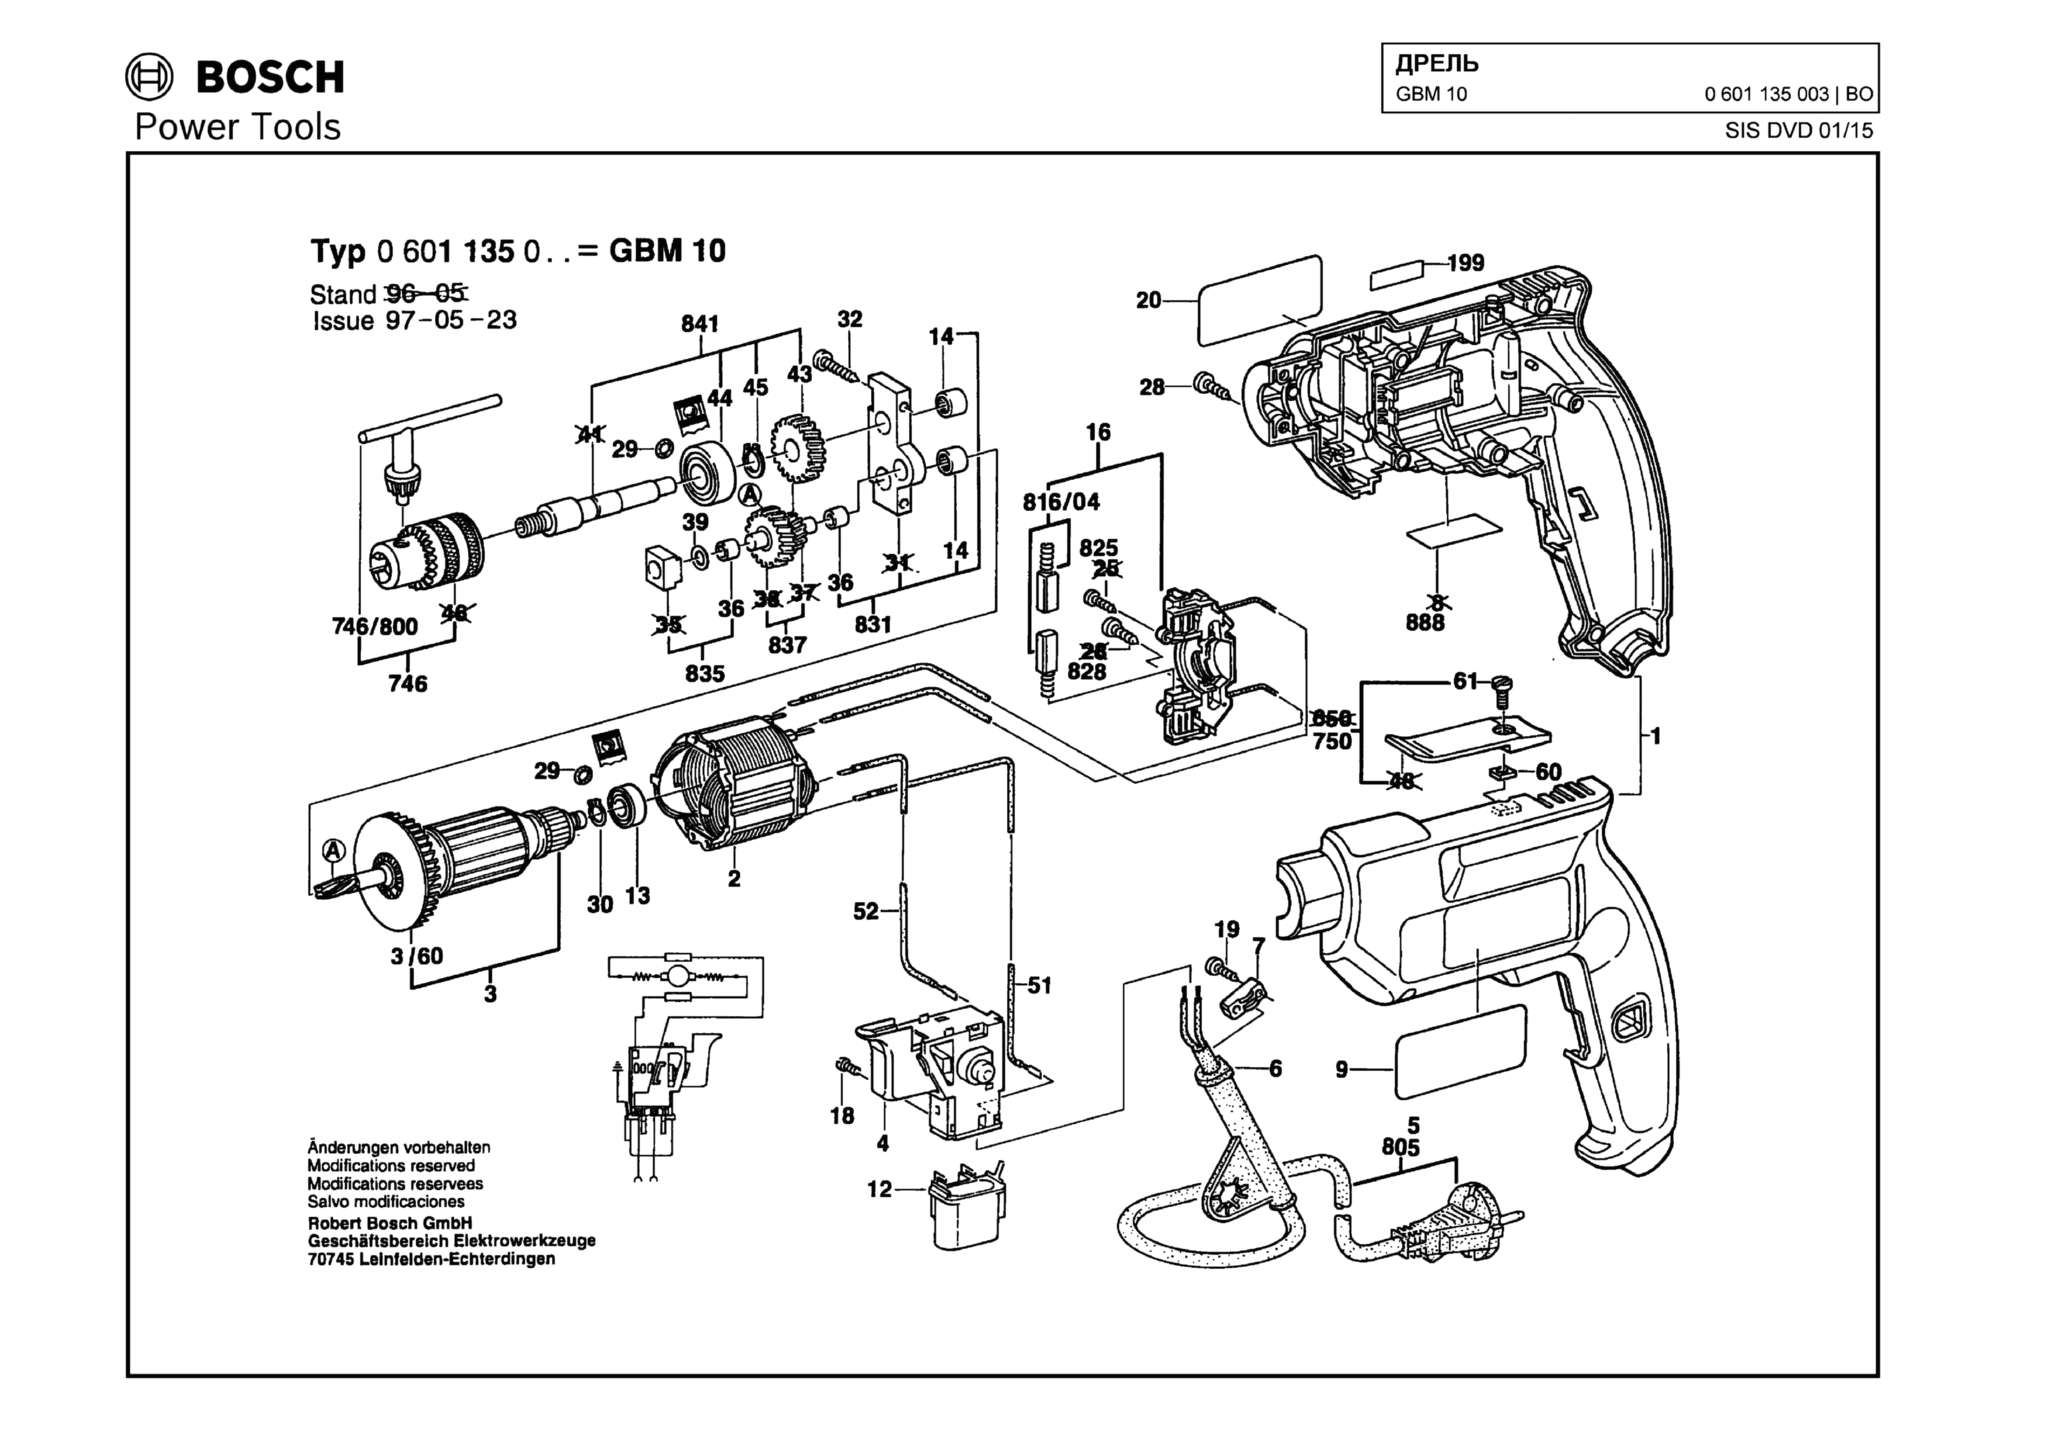 Запчасти, схема и деталировка Bosch GBM 10 (ТИП 0601135003)